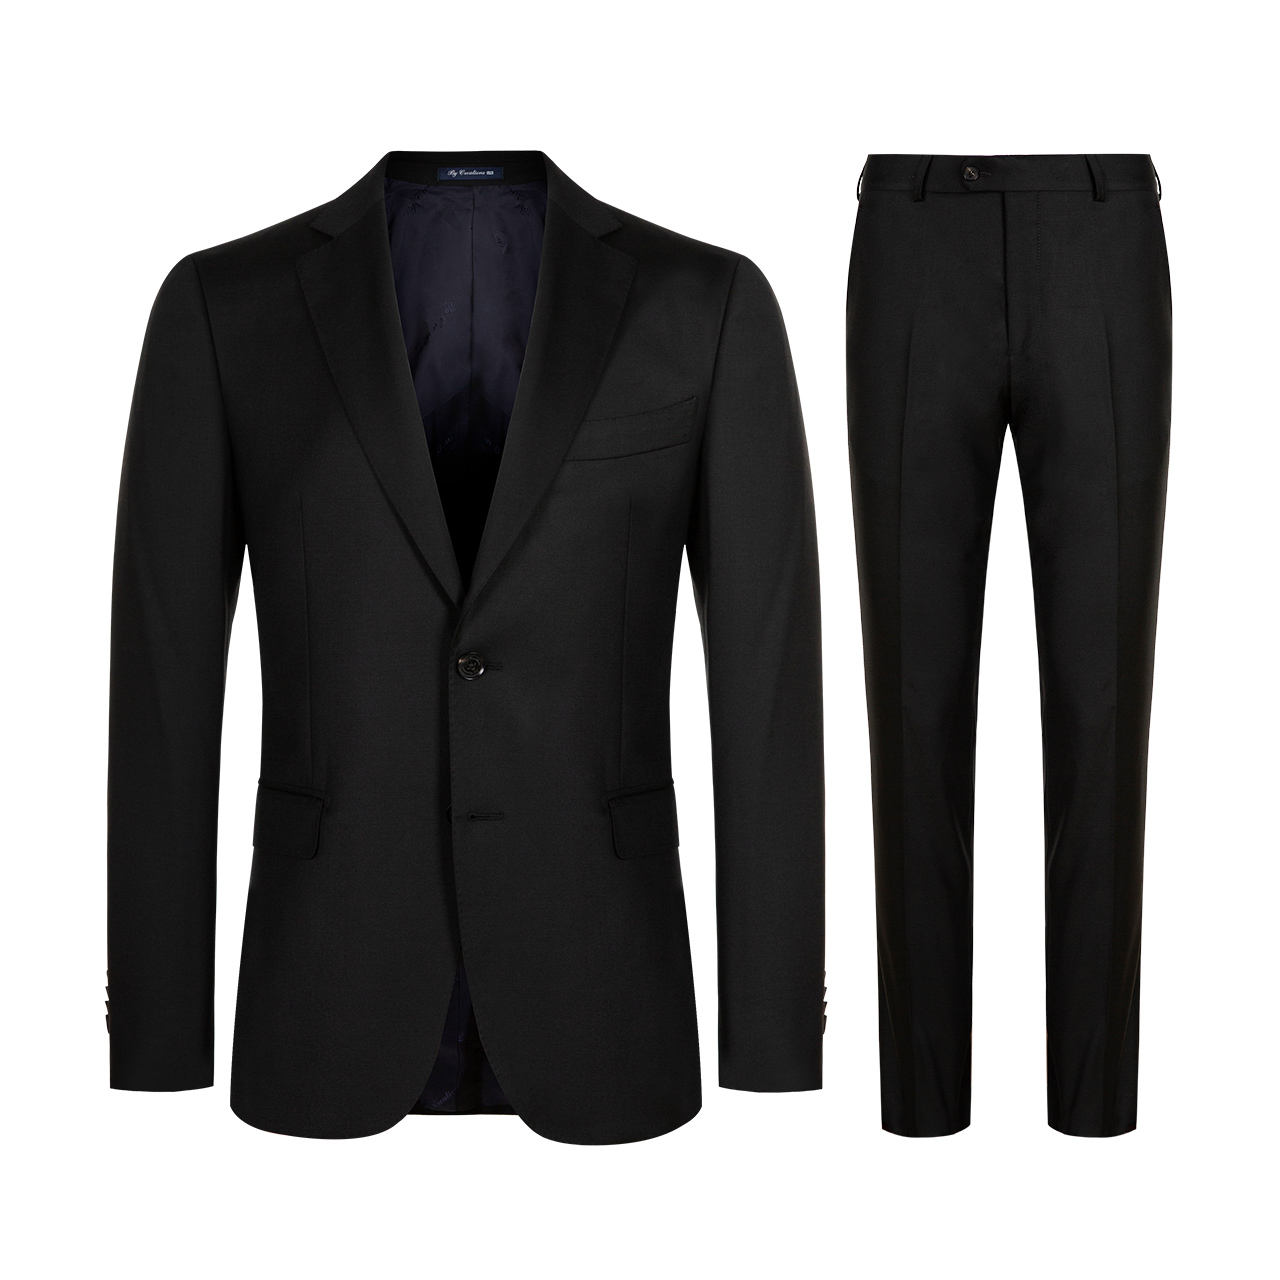 ByCreations Cypress Lite VBC len Suit Men Pure kinh doanh Groom Wedding Suit